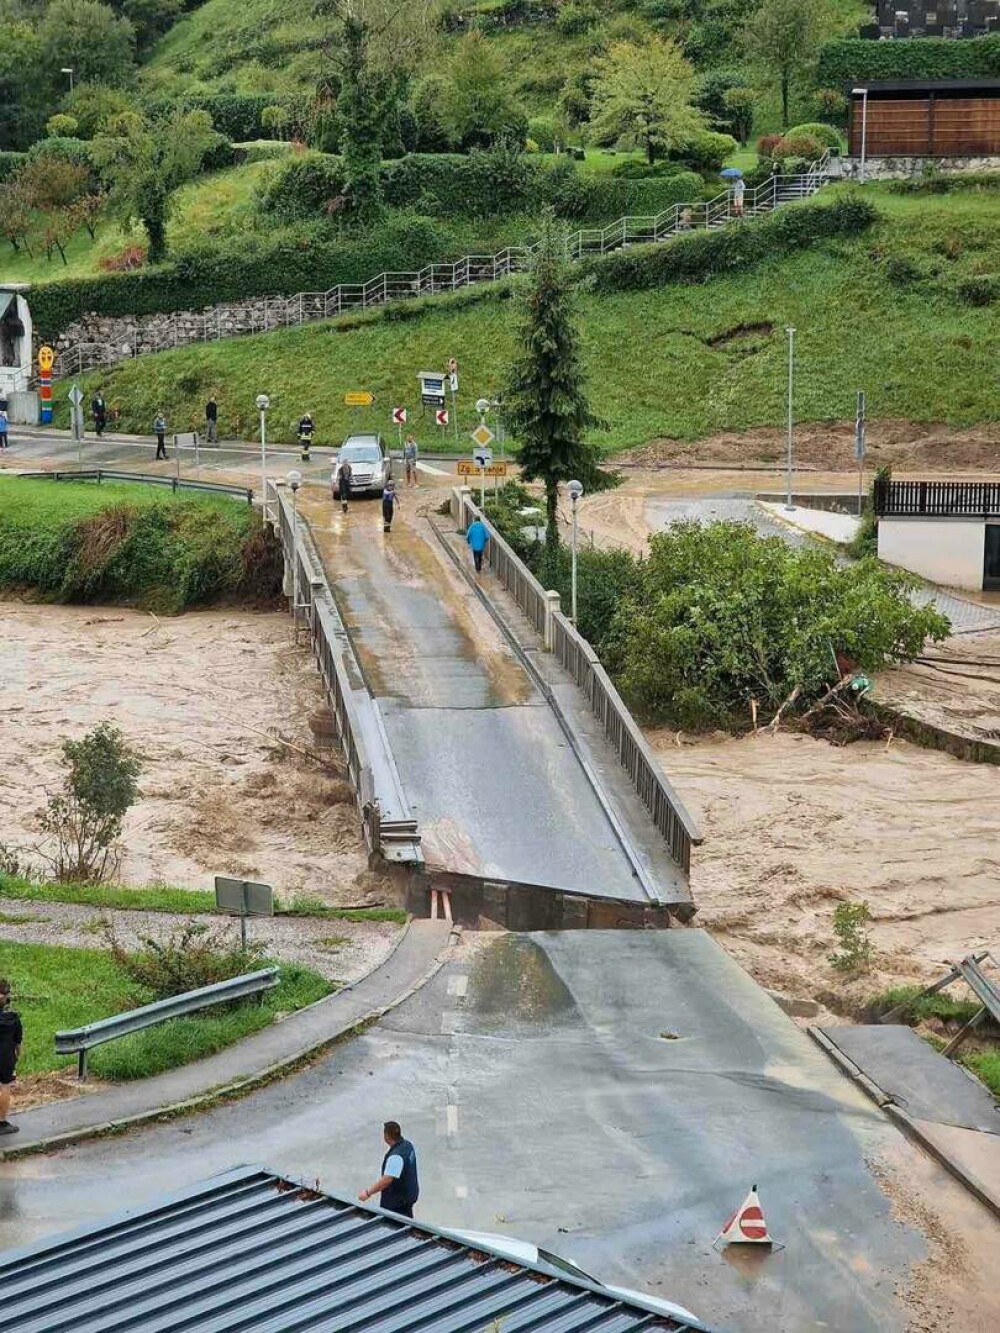 Slovenia, lovită de inundaţii de proporţii „biblice”. Apa a atins 2 metri în unele locuri. VIDEO - Imaginea 3